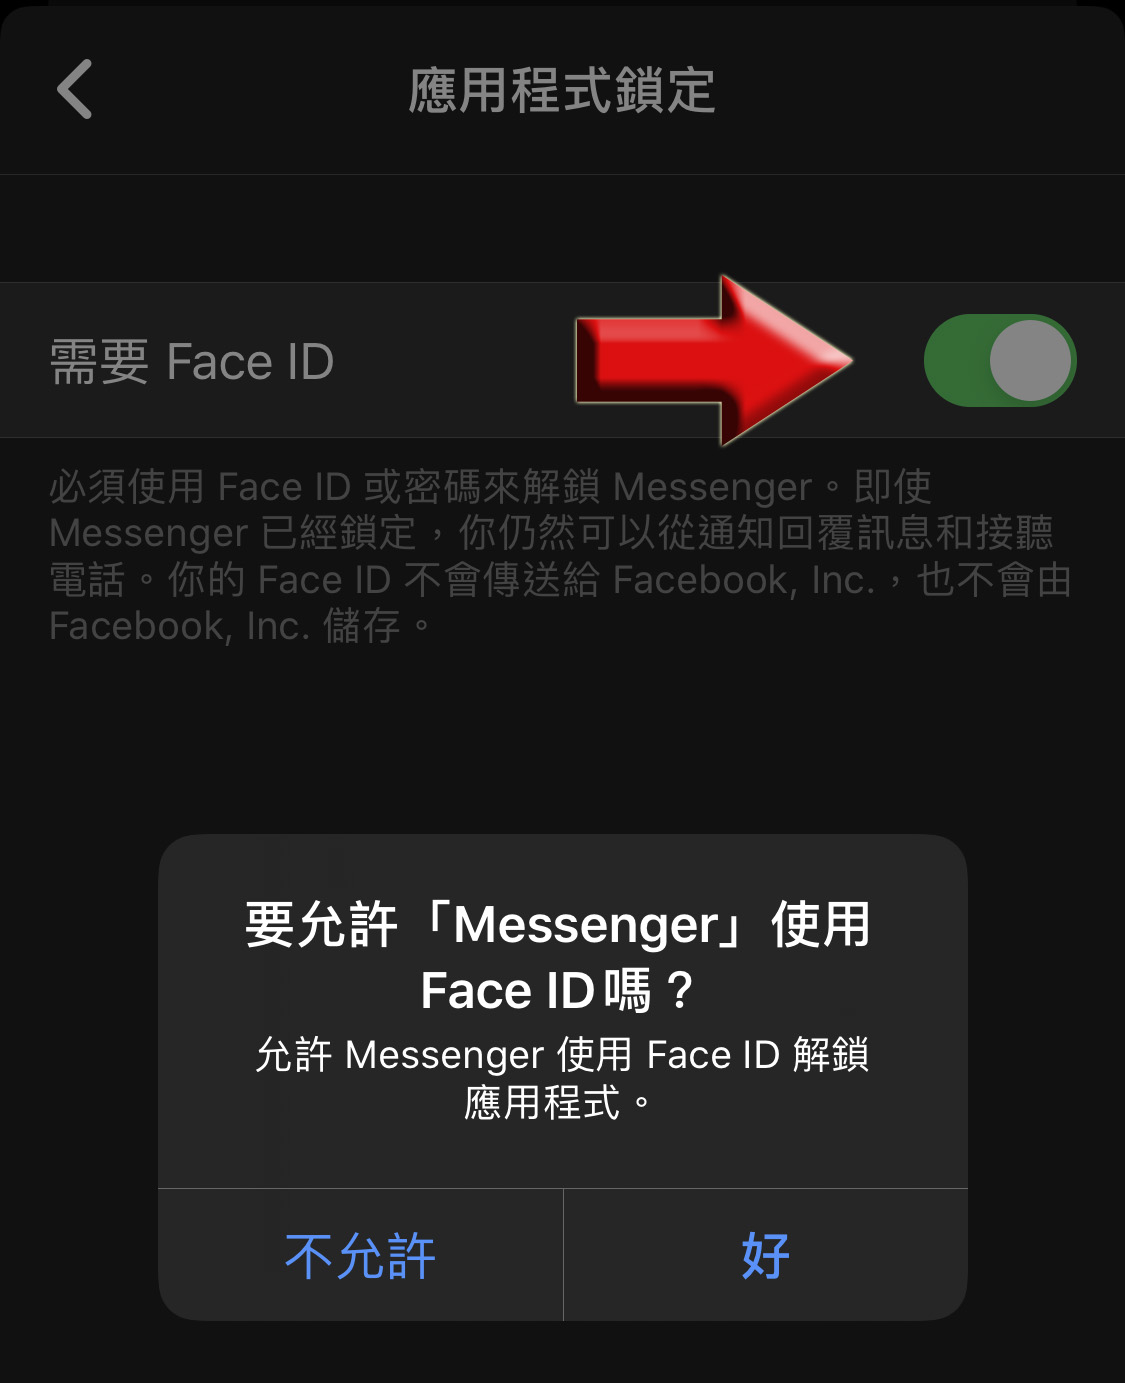 如何用臉部辨識或指紋幫臉書 Messenger 加密上鎖 | Face ID, Messenger+, Touch ID, 臉書上鎖 | iPhone News 愛瘋了